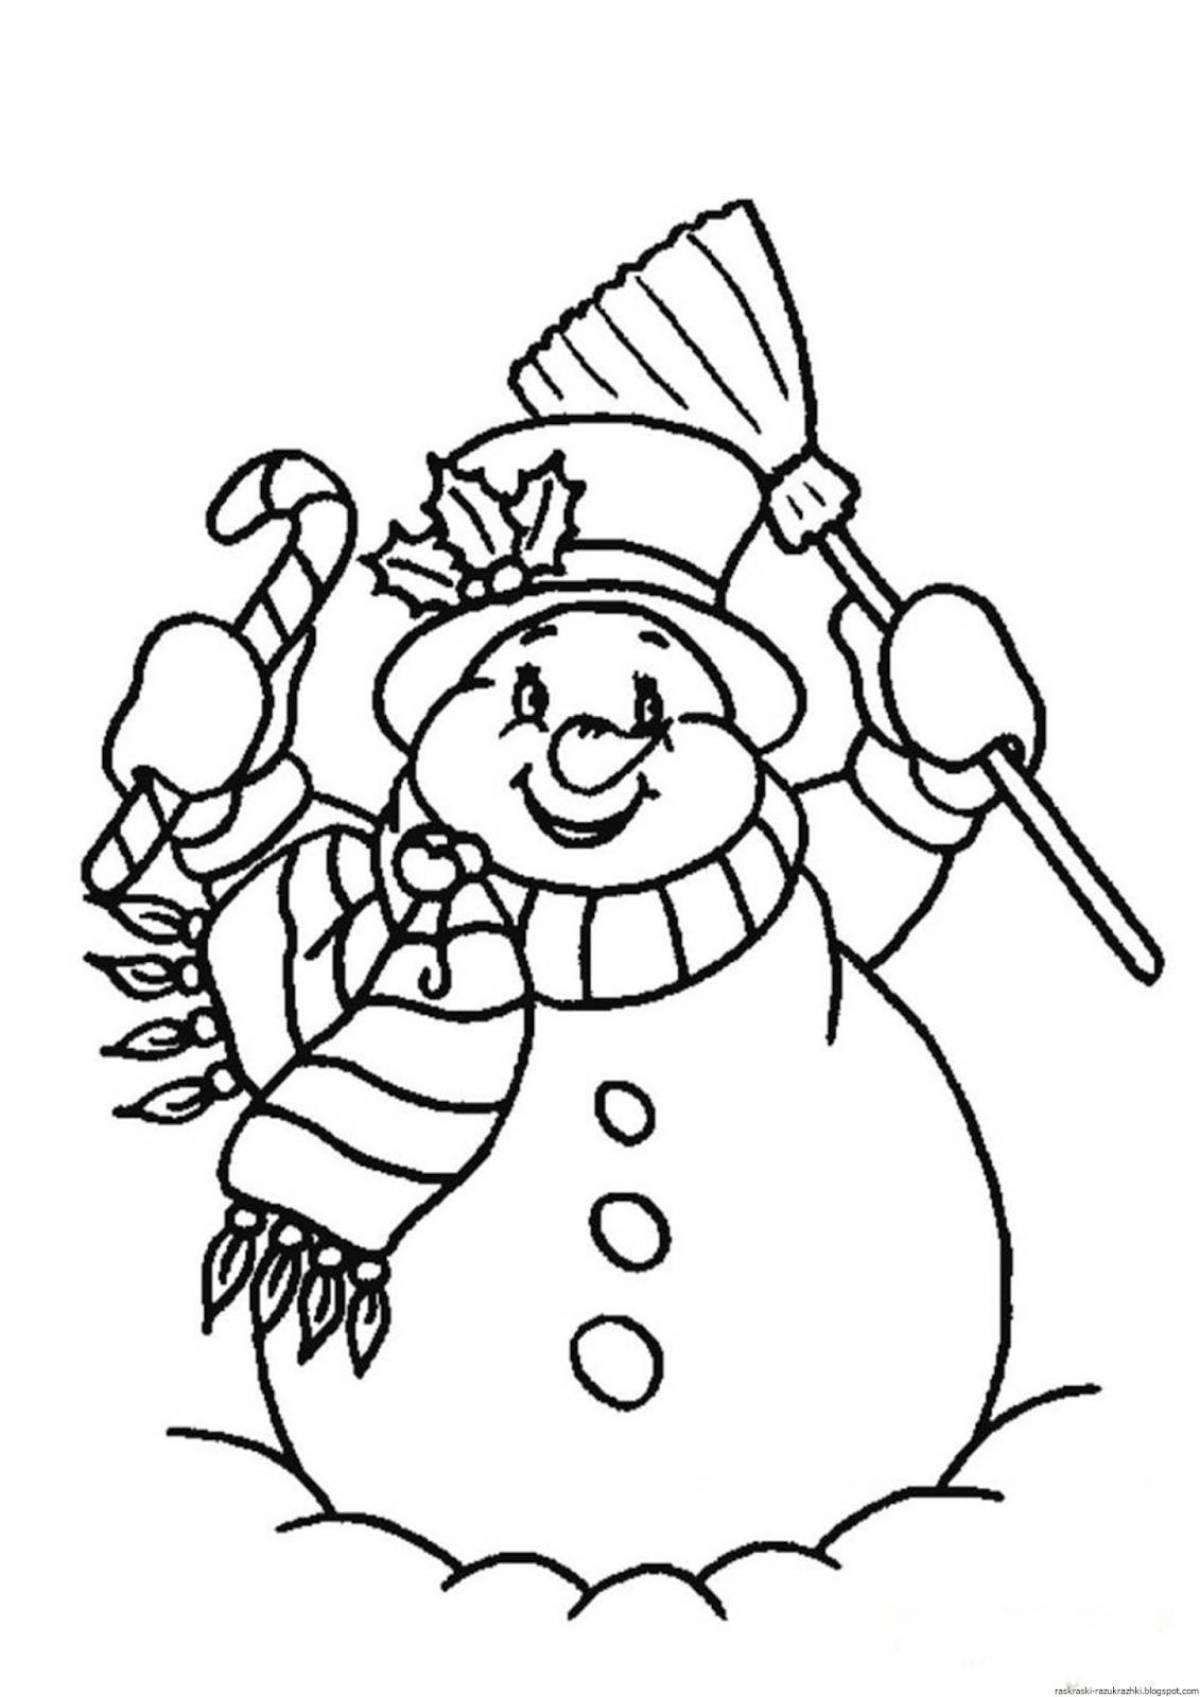 Игривая страница раскраски снеговика для детей